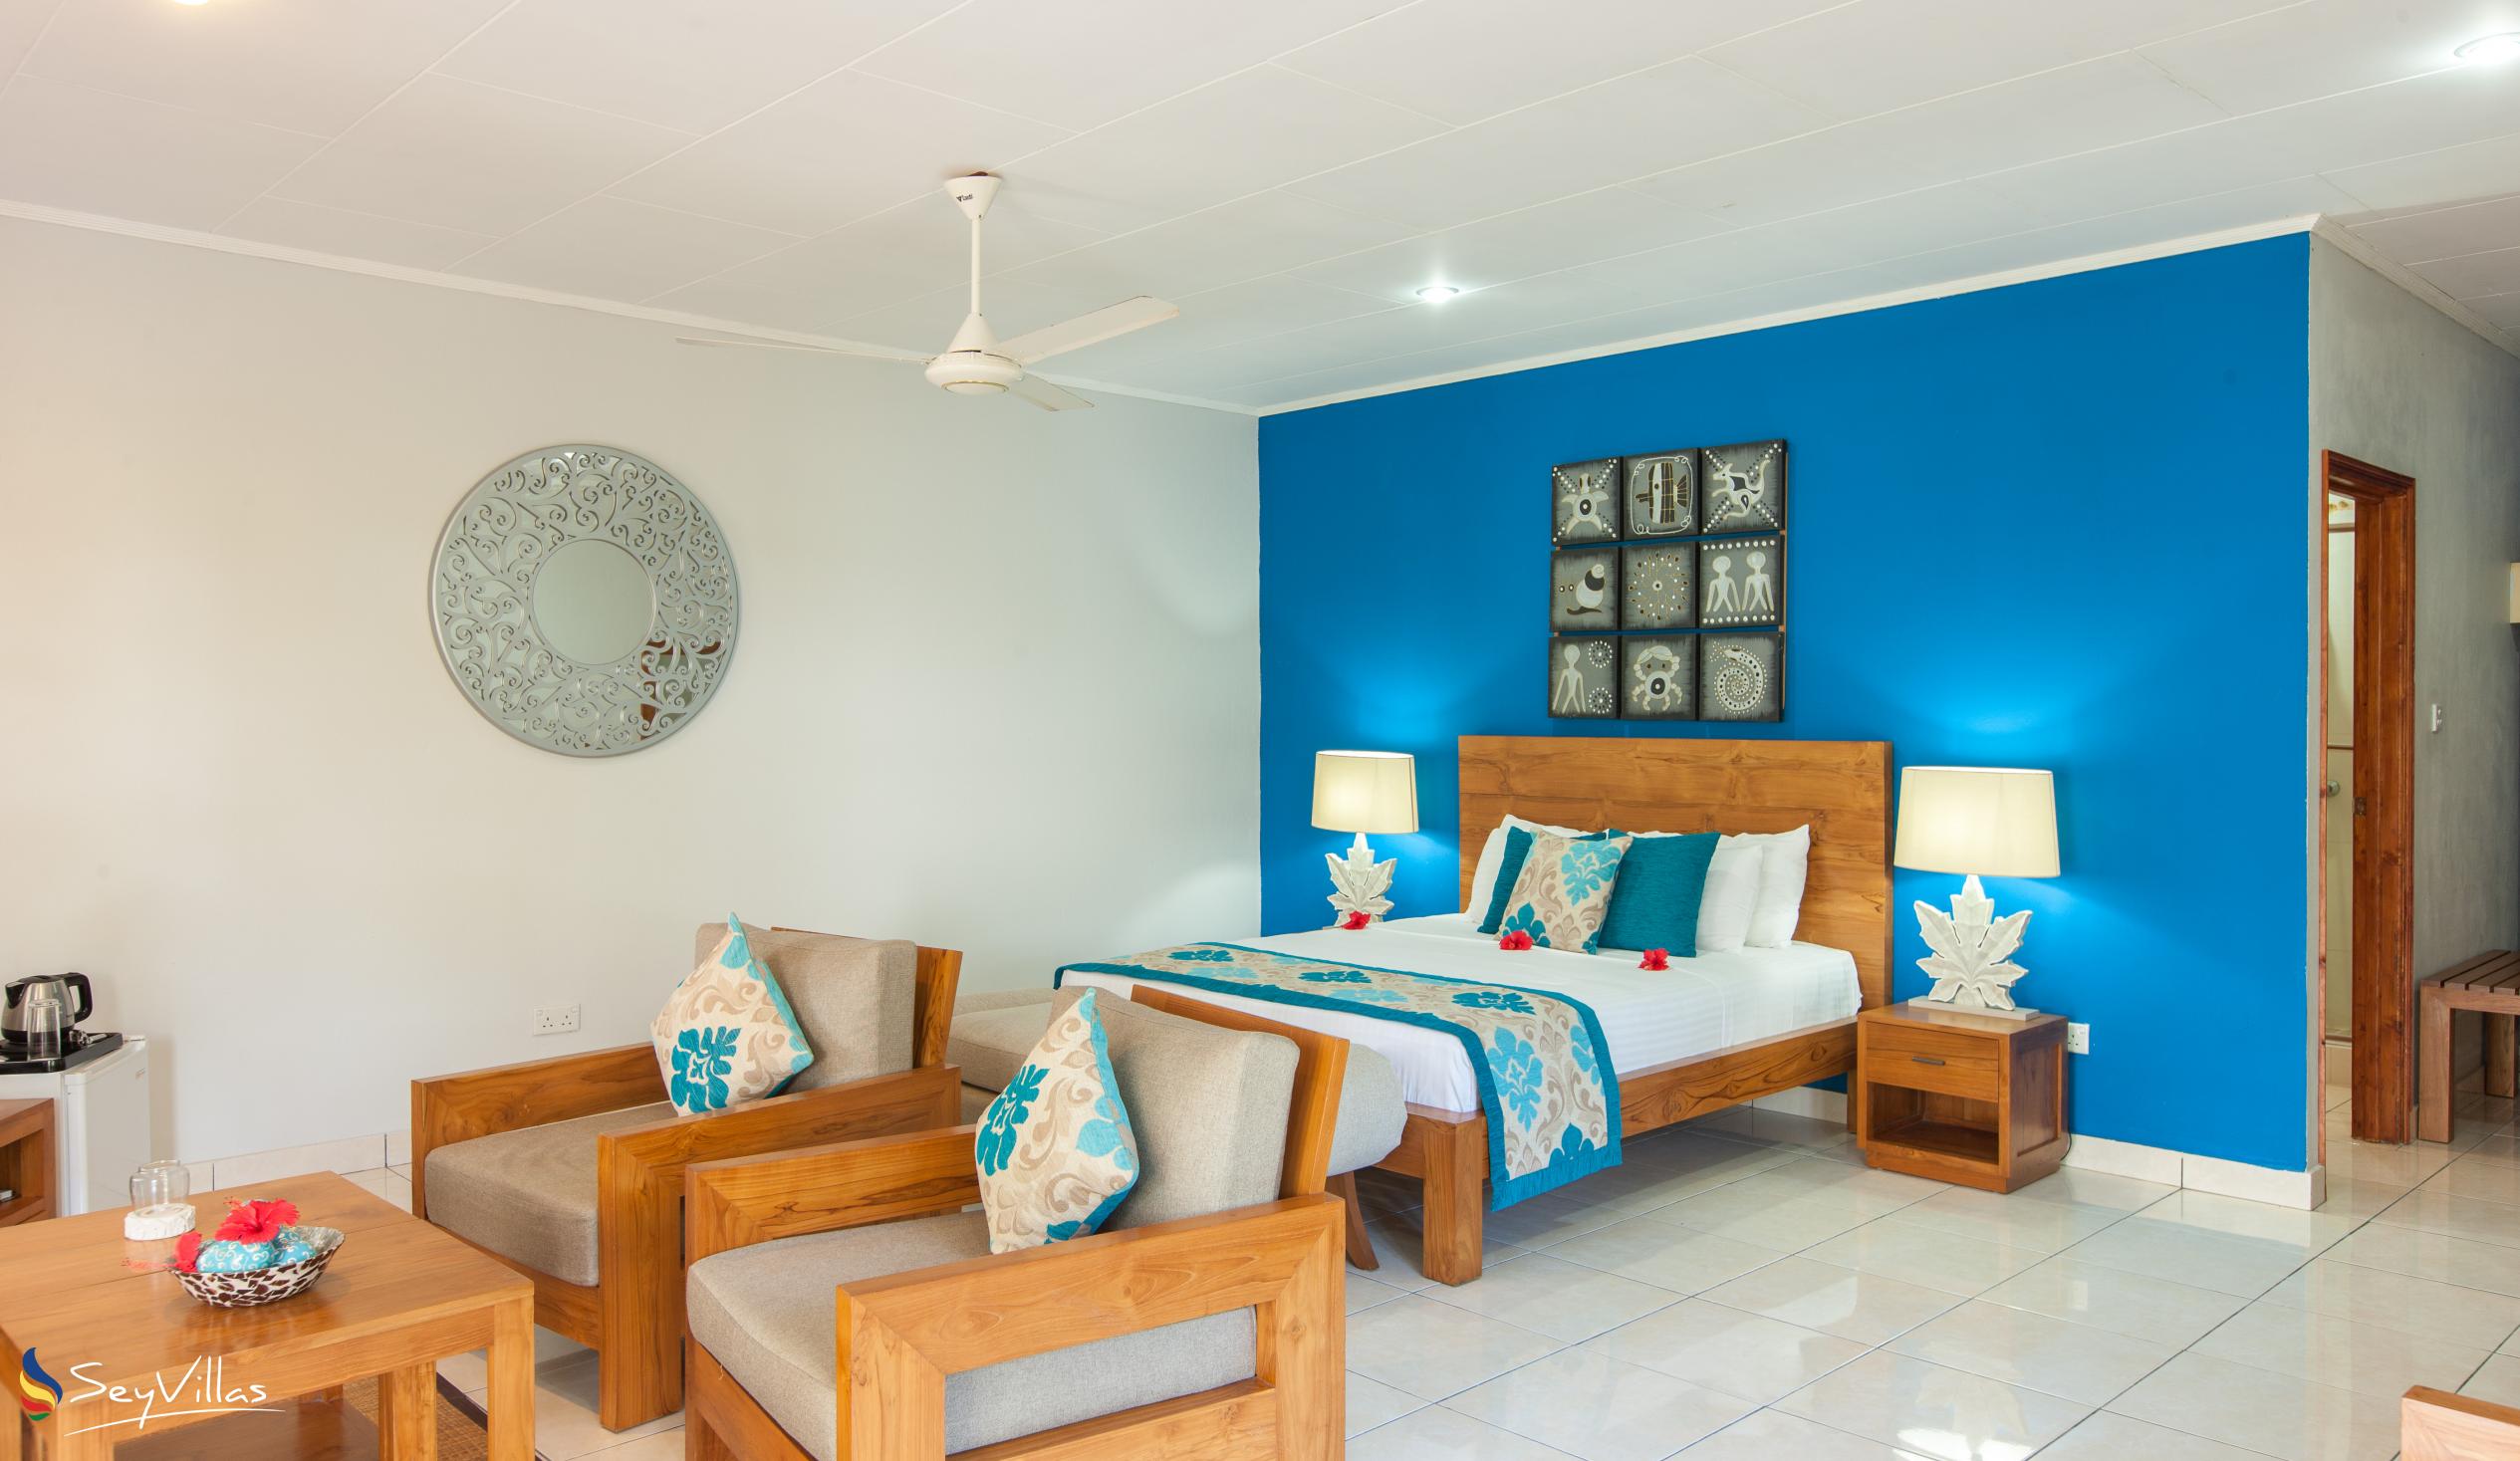 Foto 37: Villas de Mer - Junior Suite - Praslin (Seychelles)